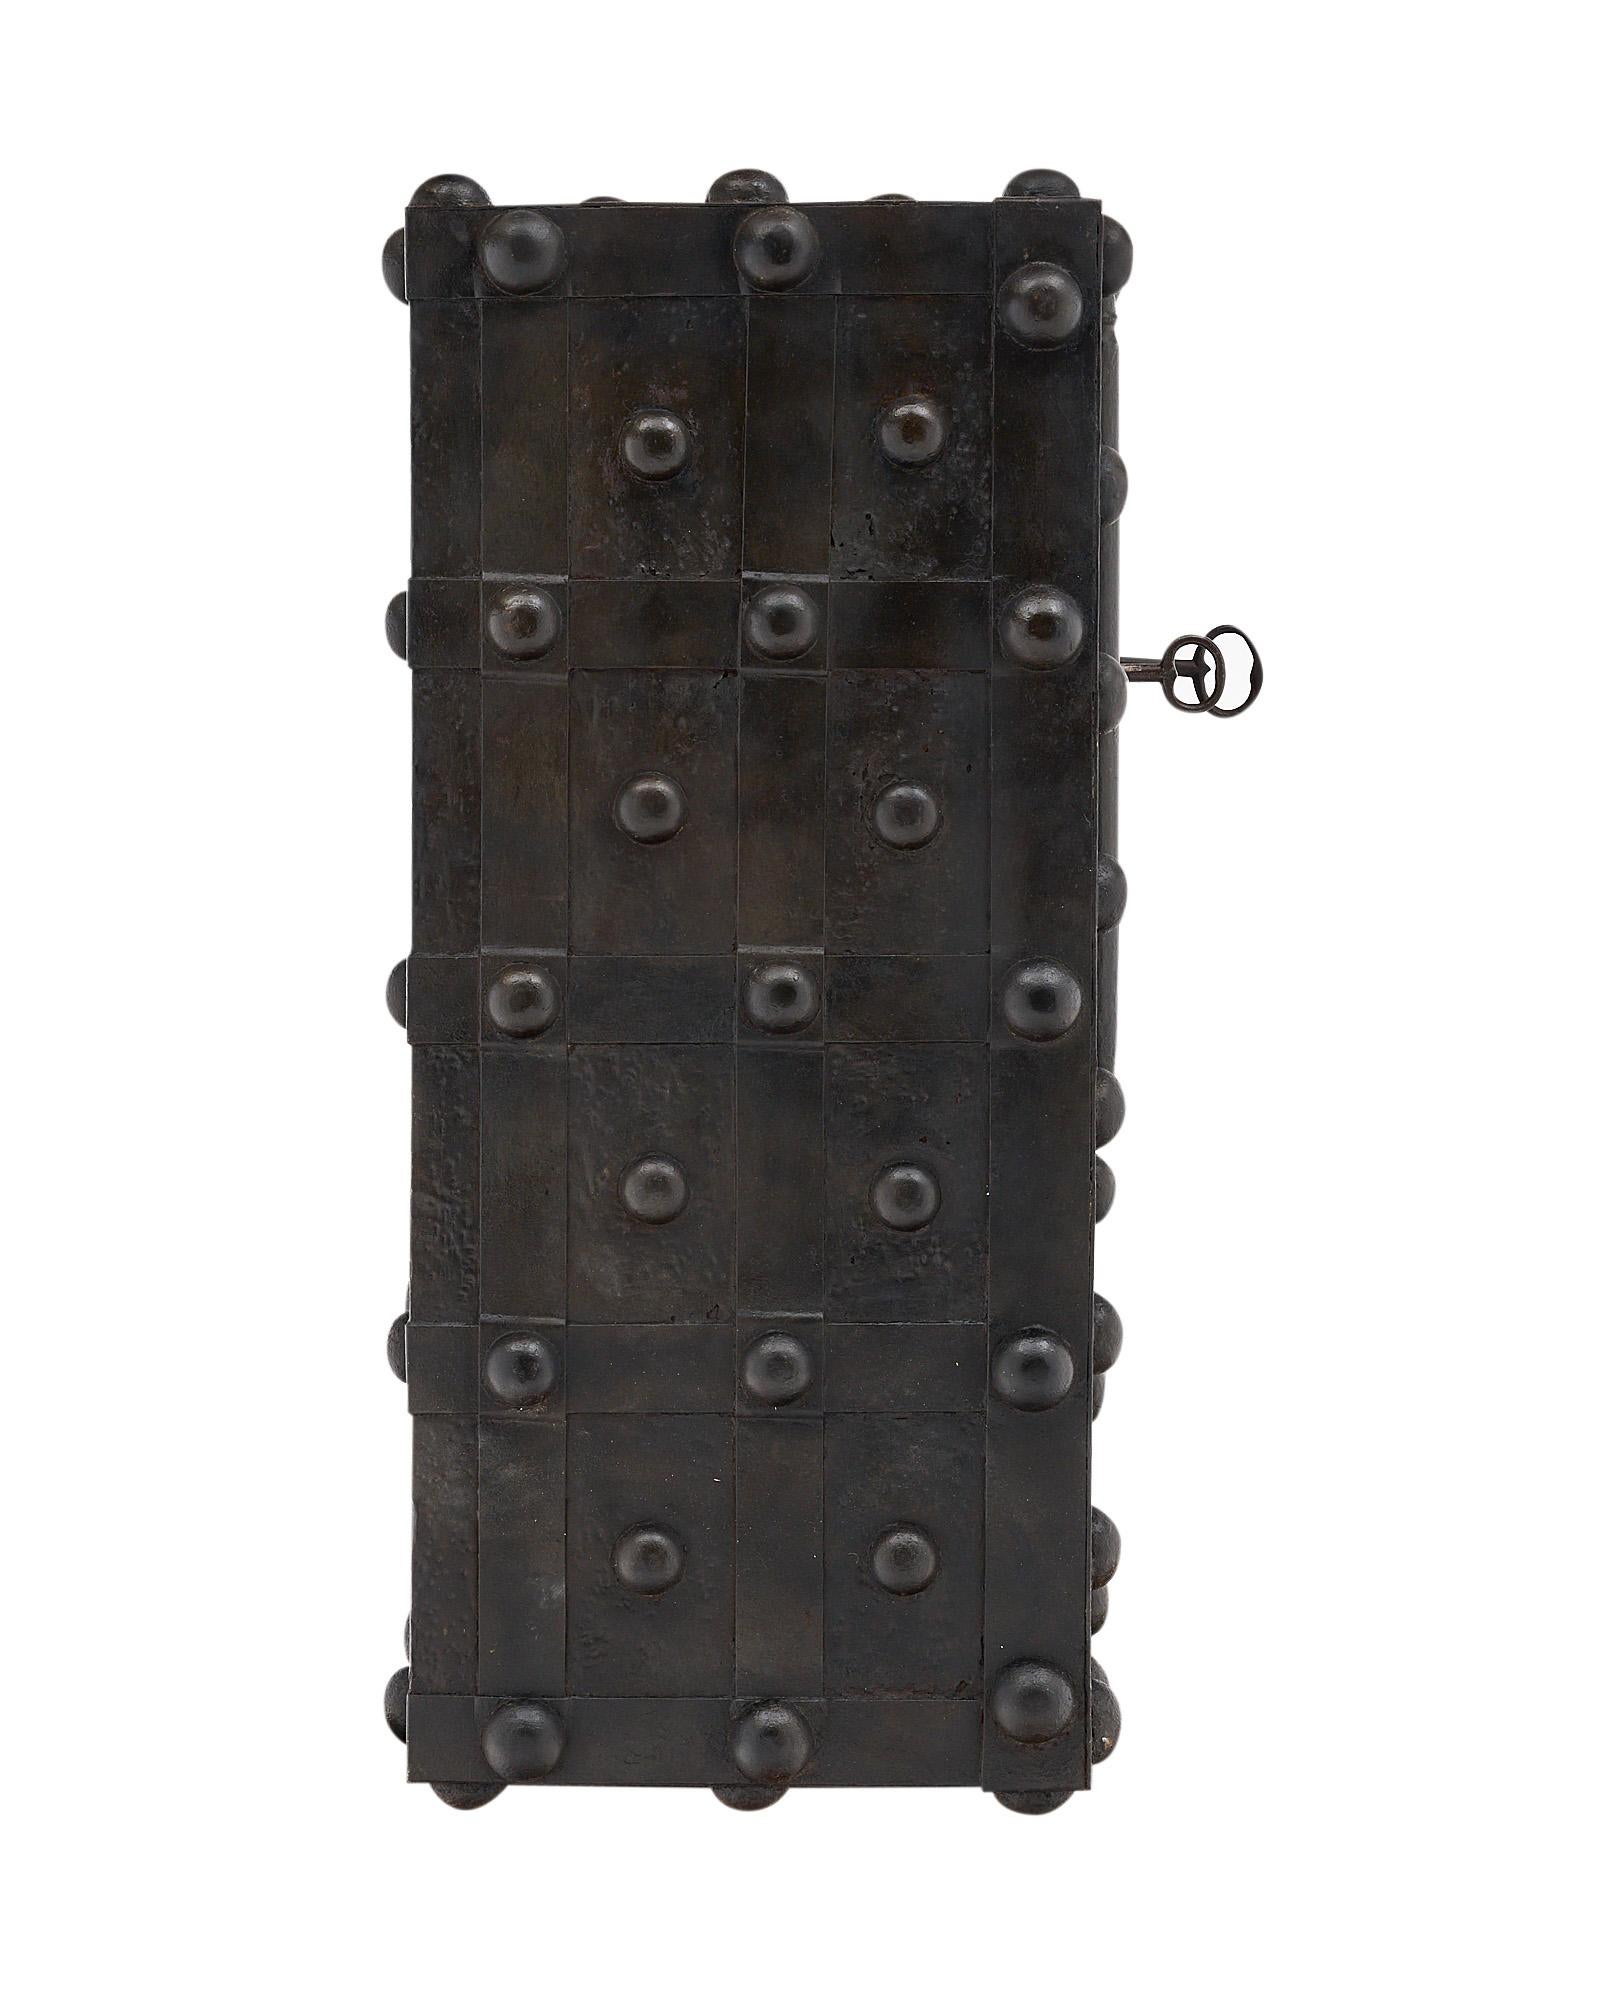 Le coffre-fort en fer forgé est décoré de motifs de têtes de clous sur les quatre côtés et possède un mécanisme de fonctionnement entièrement d'origine. La porte d'entrée comporte deux grandes charnières latérales. L'intérieur s'ouvre pour révéler